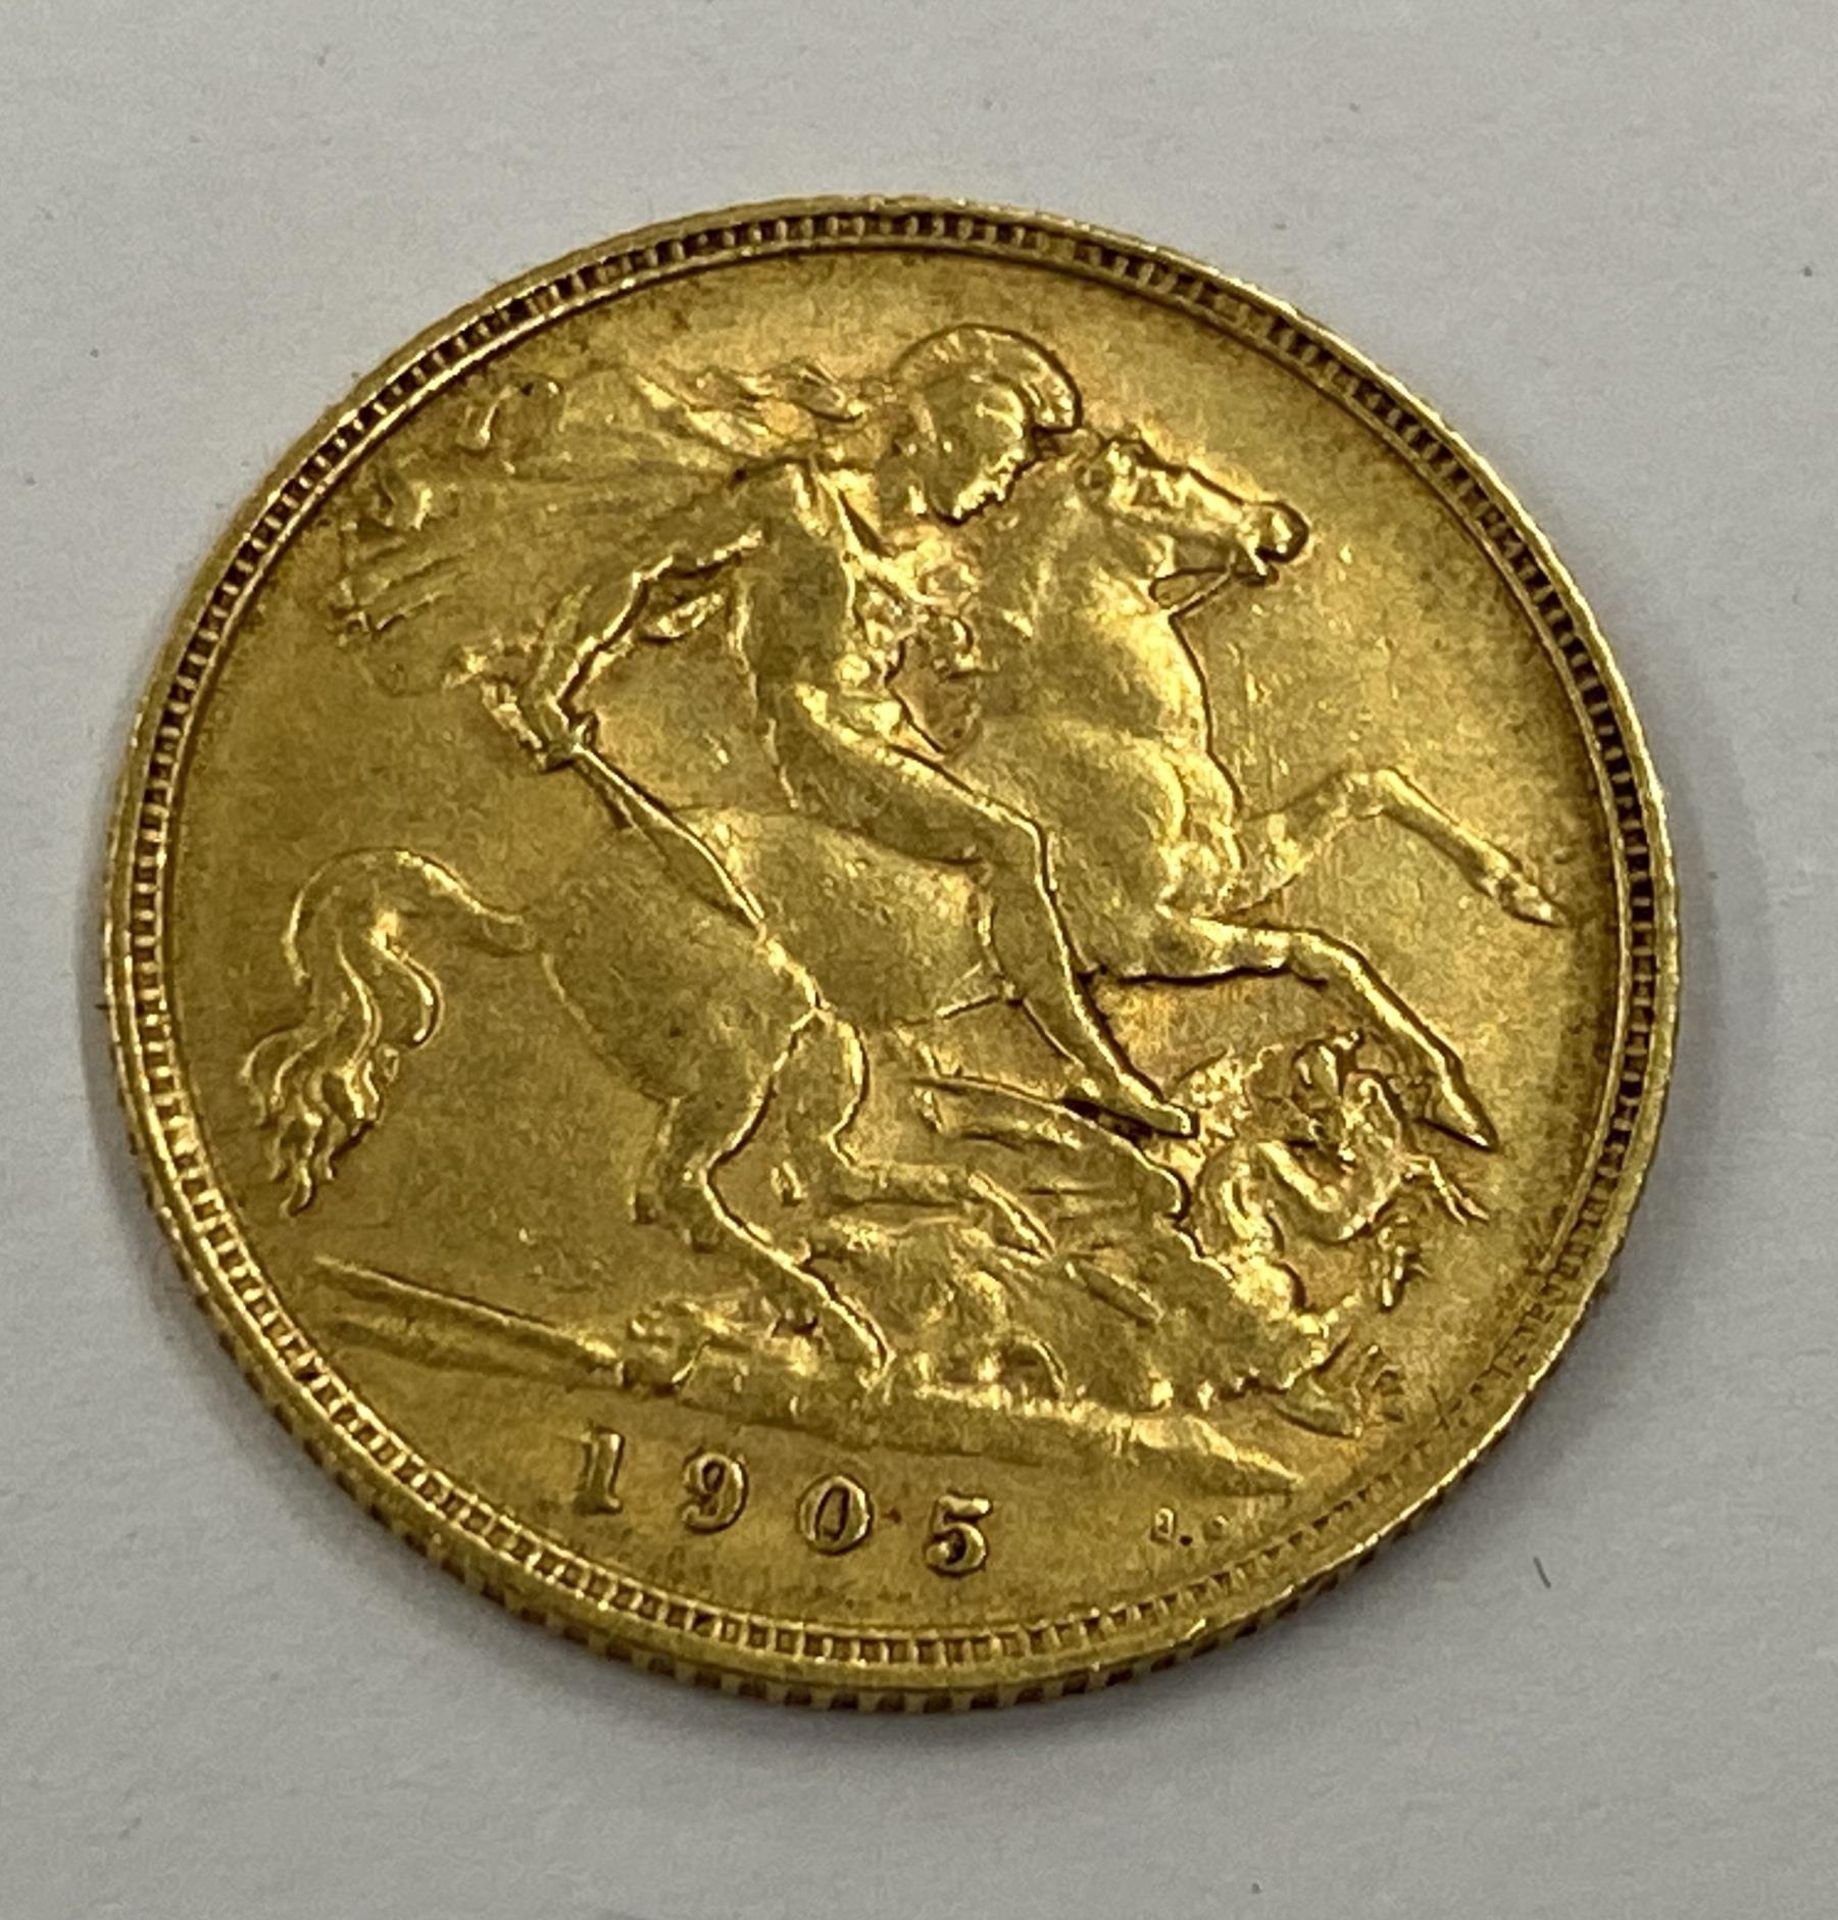 AN EDWARD VII 1905 GOLD HALF SOVEREIGN COIN